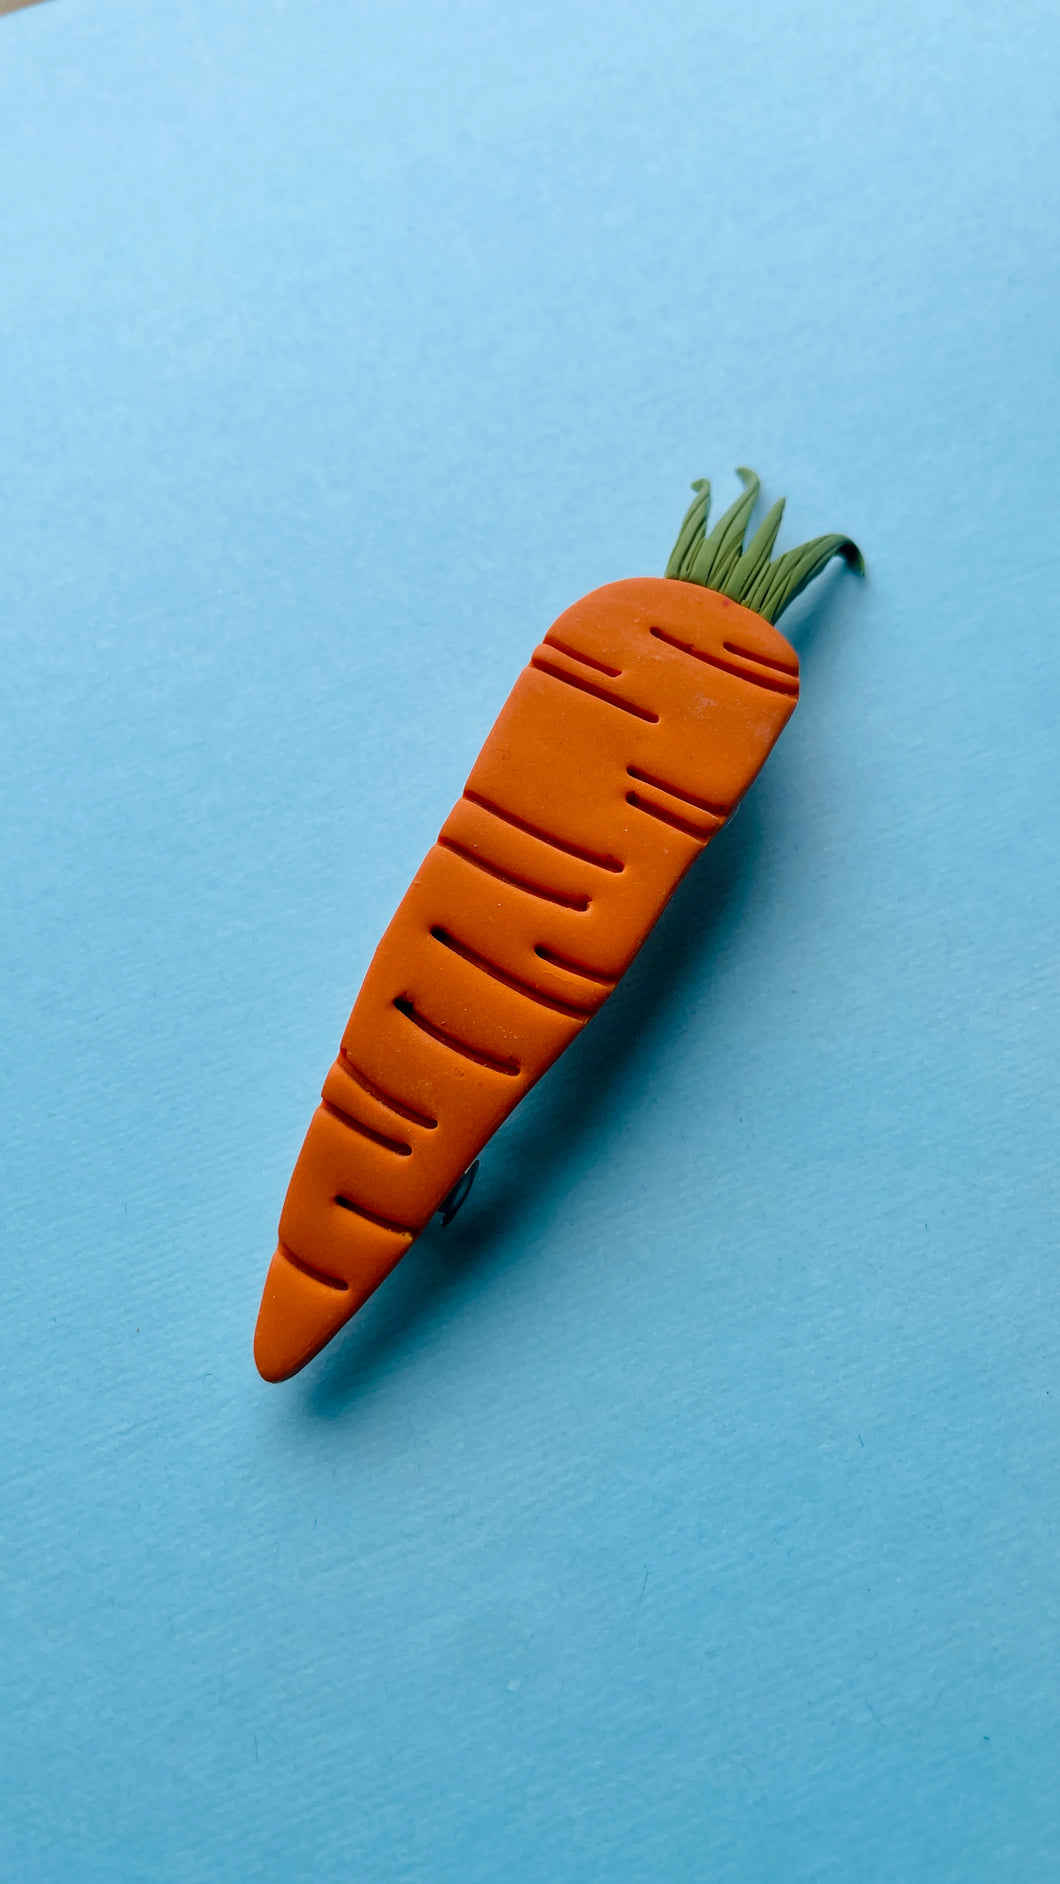 carrotte barrette 2